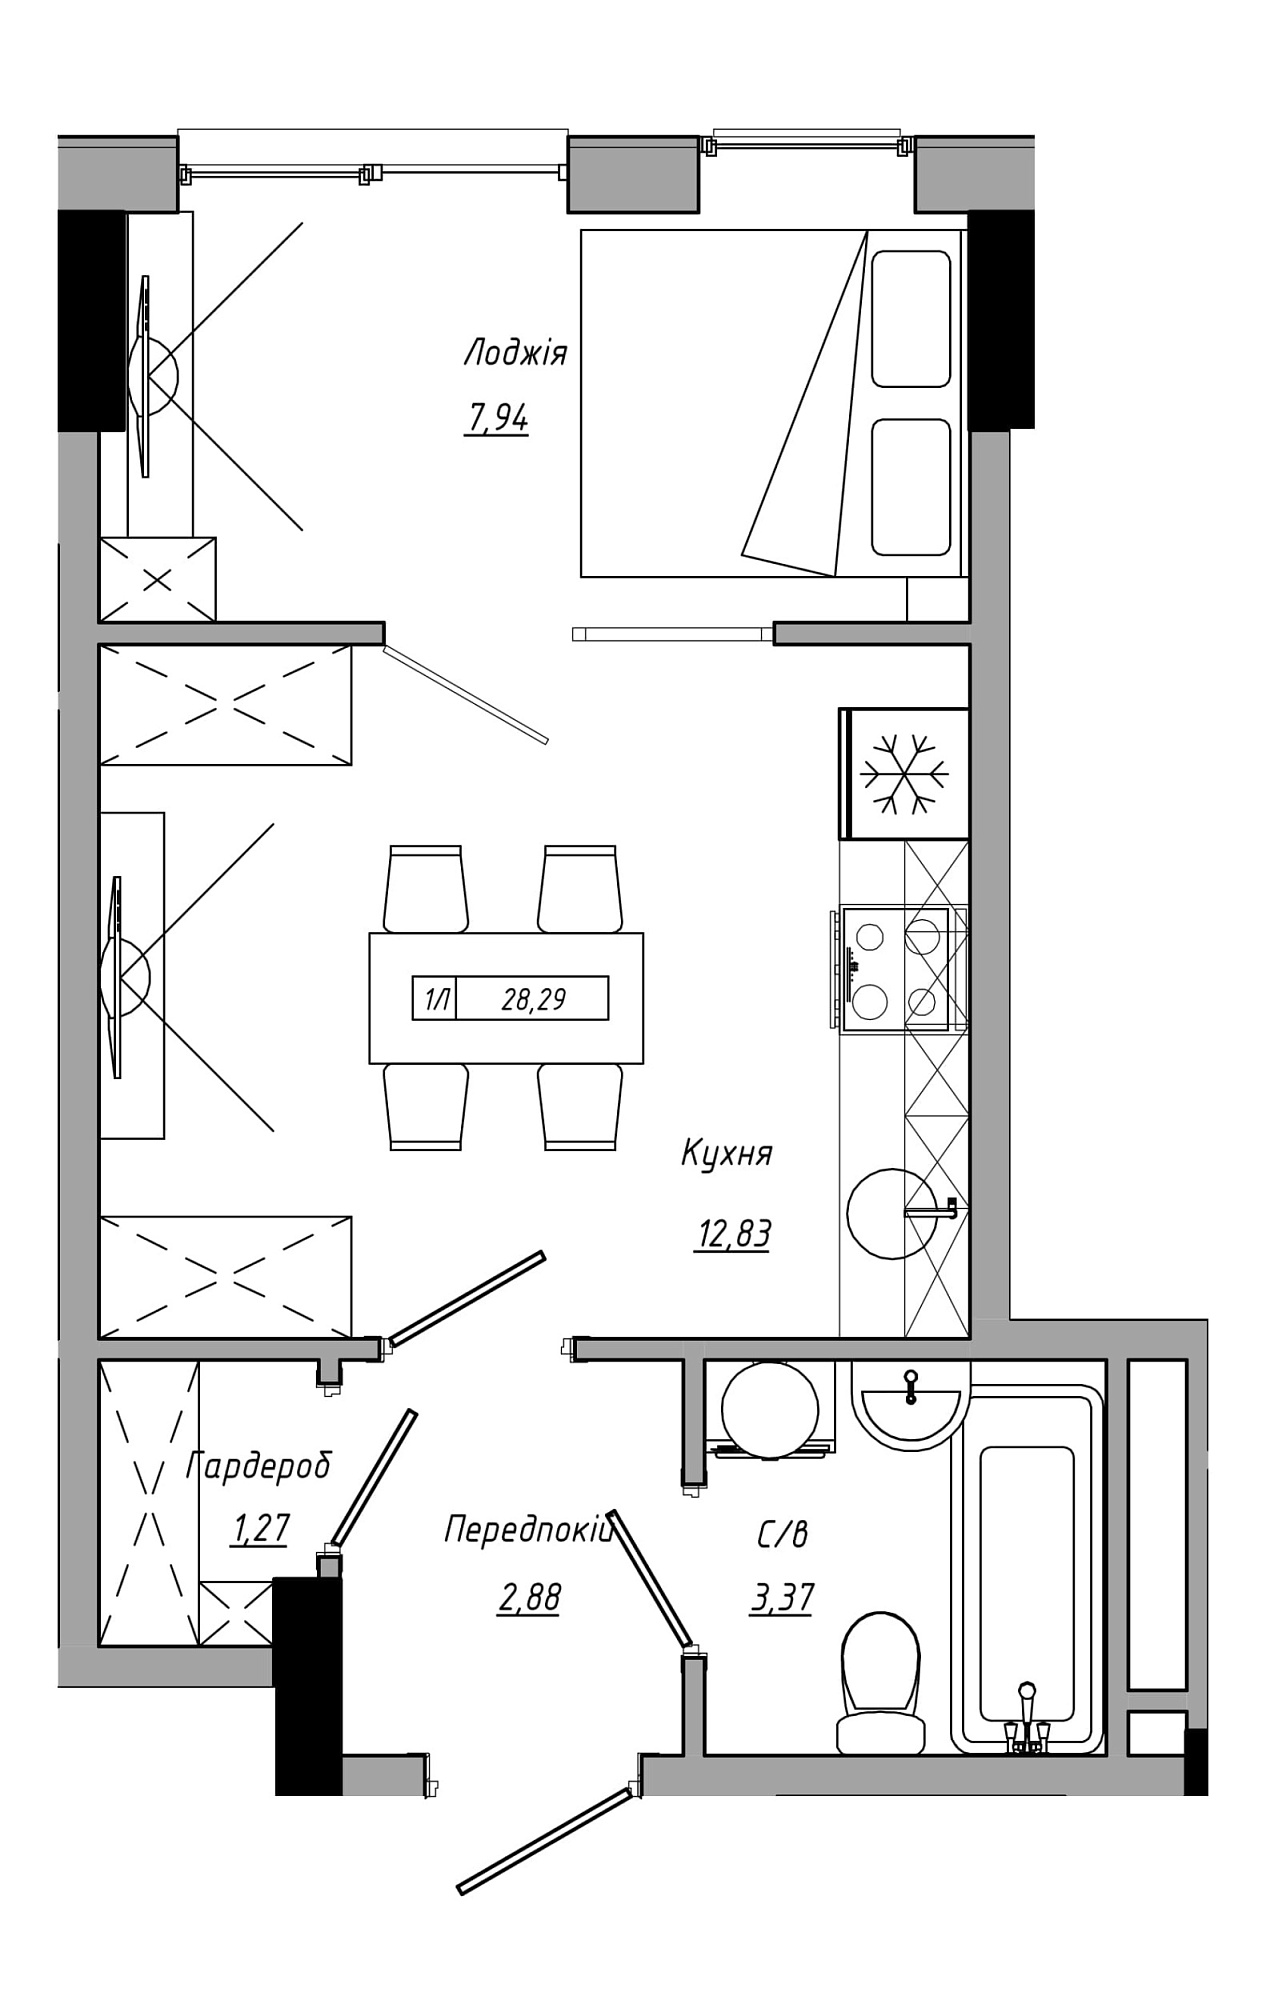 Планування 1-к квартира площею 28.29м2, AB-21-09/00014.